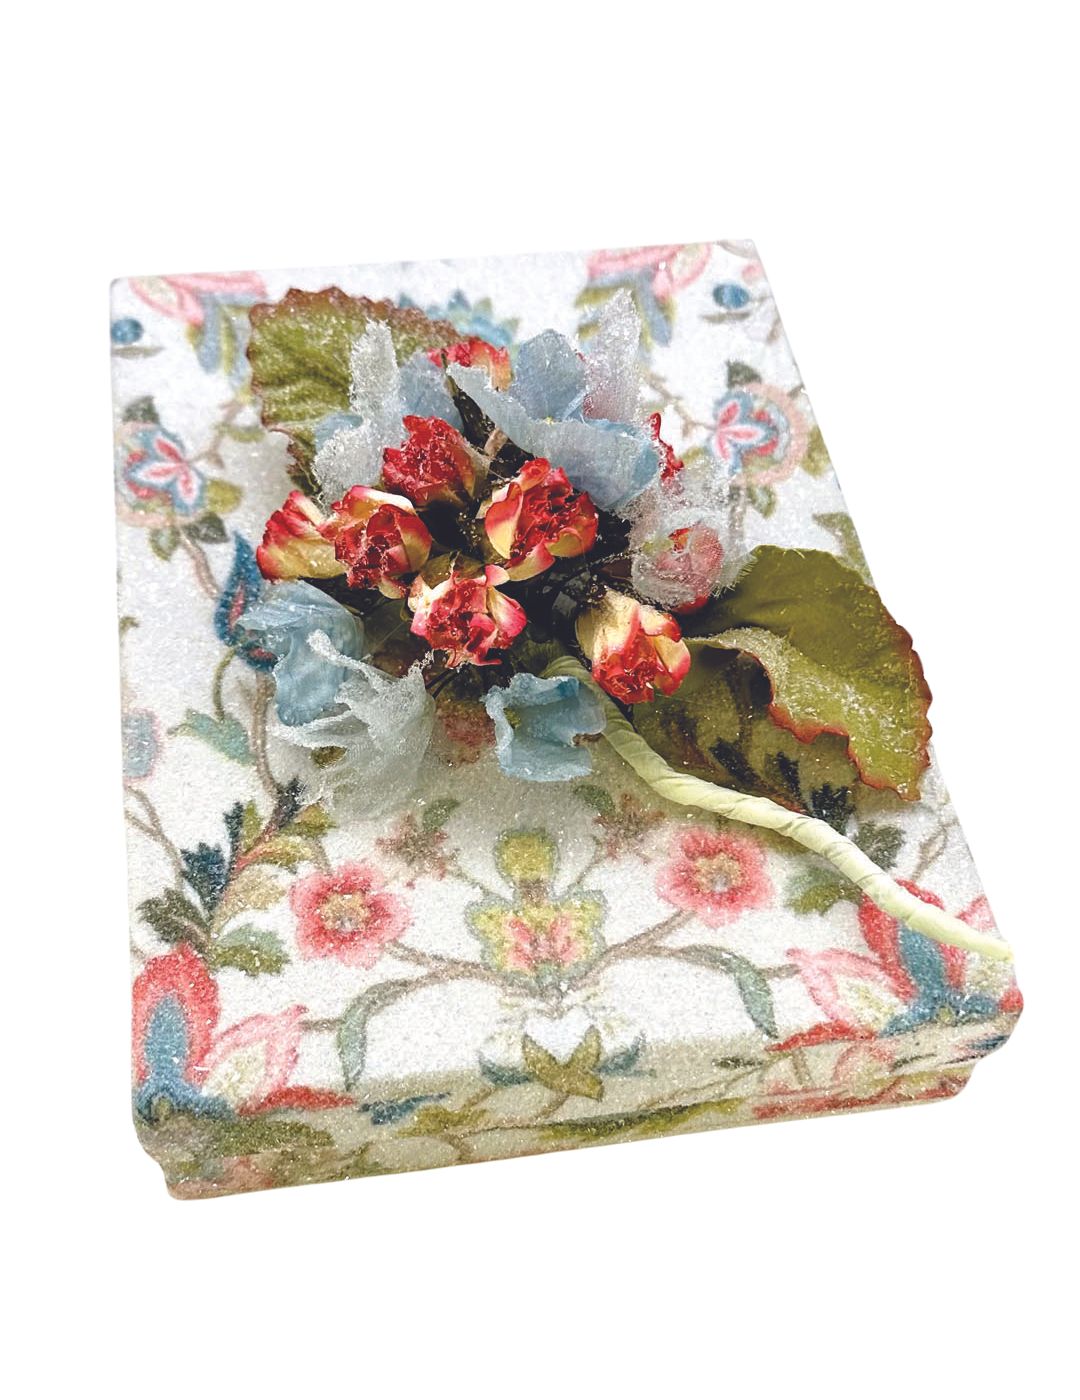 Decoupage Box, Rectangle 5" x 7" - Jacobean Floral